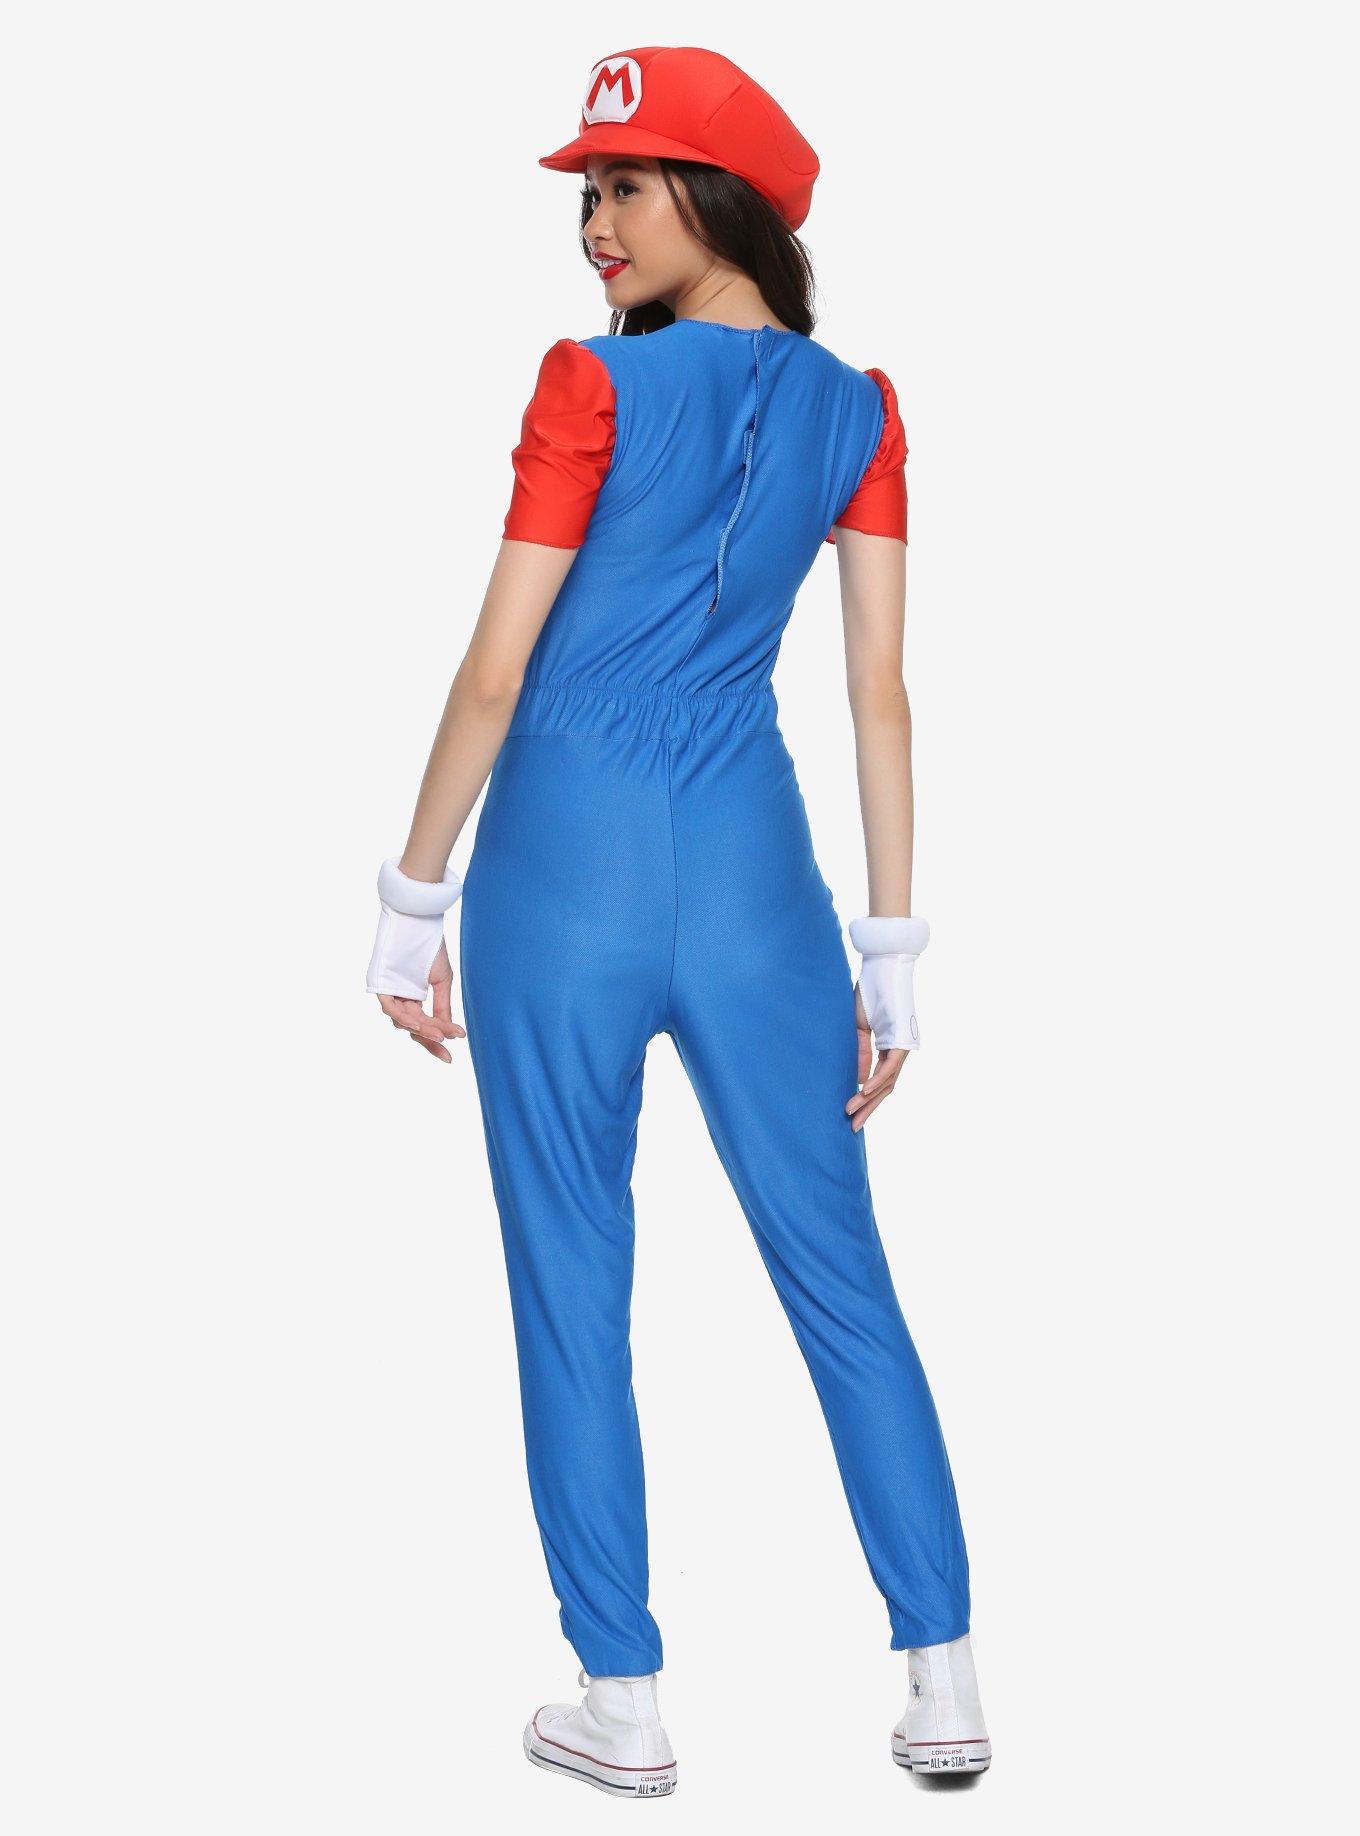 Super Mario Bros. Mario Deluxe Girls Costume, , alternate